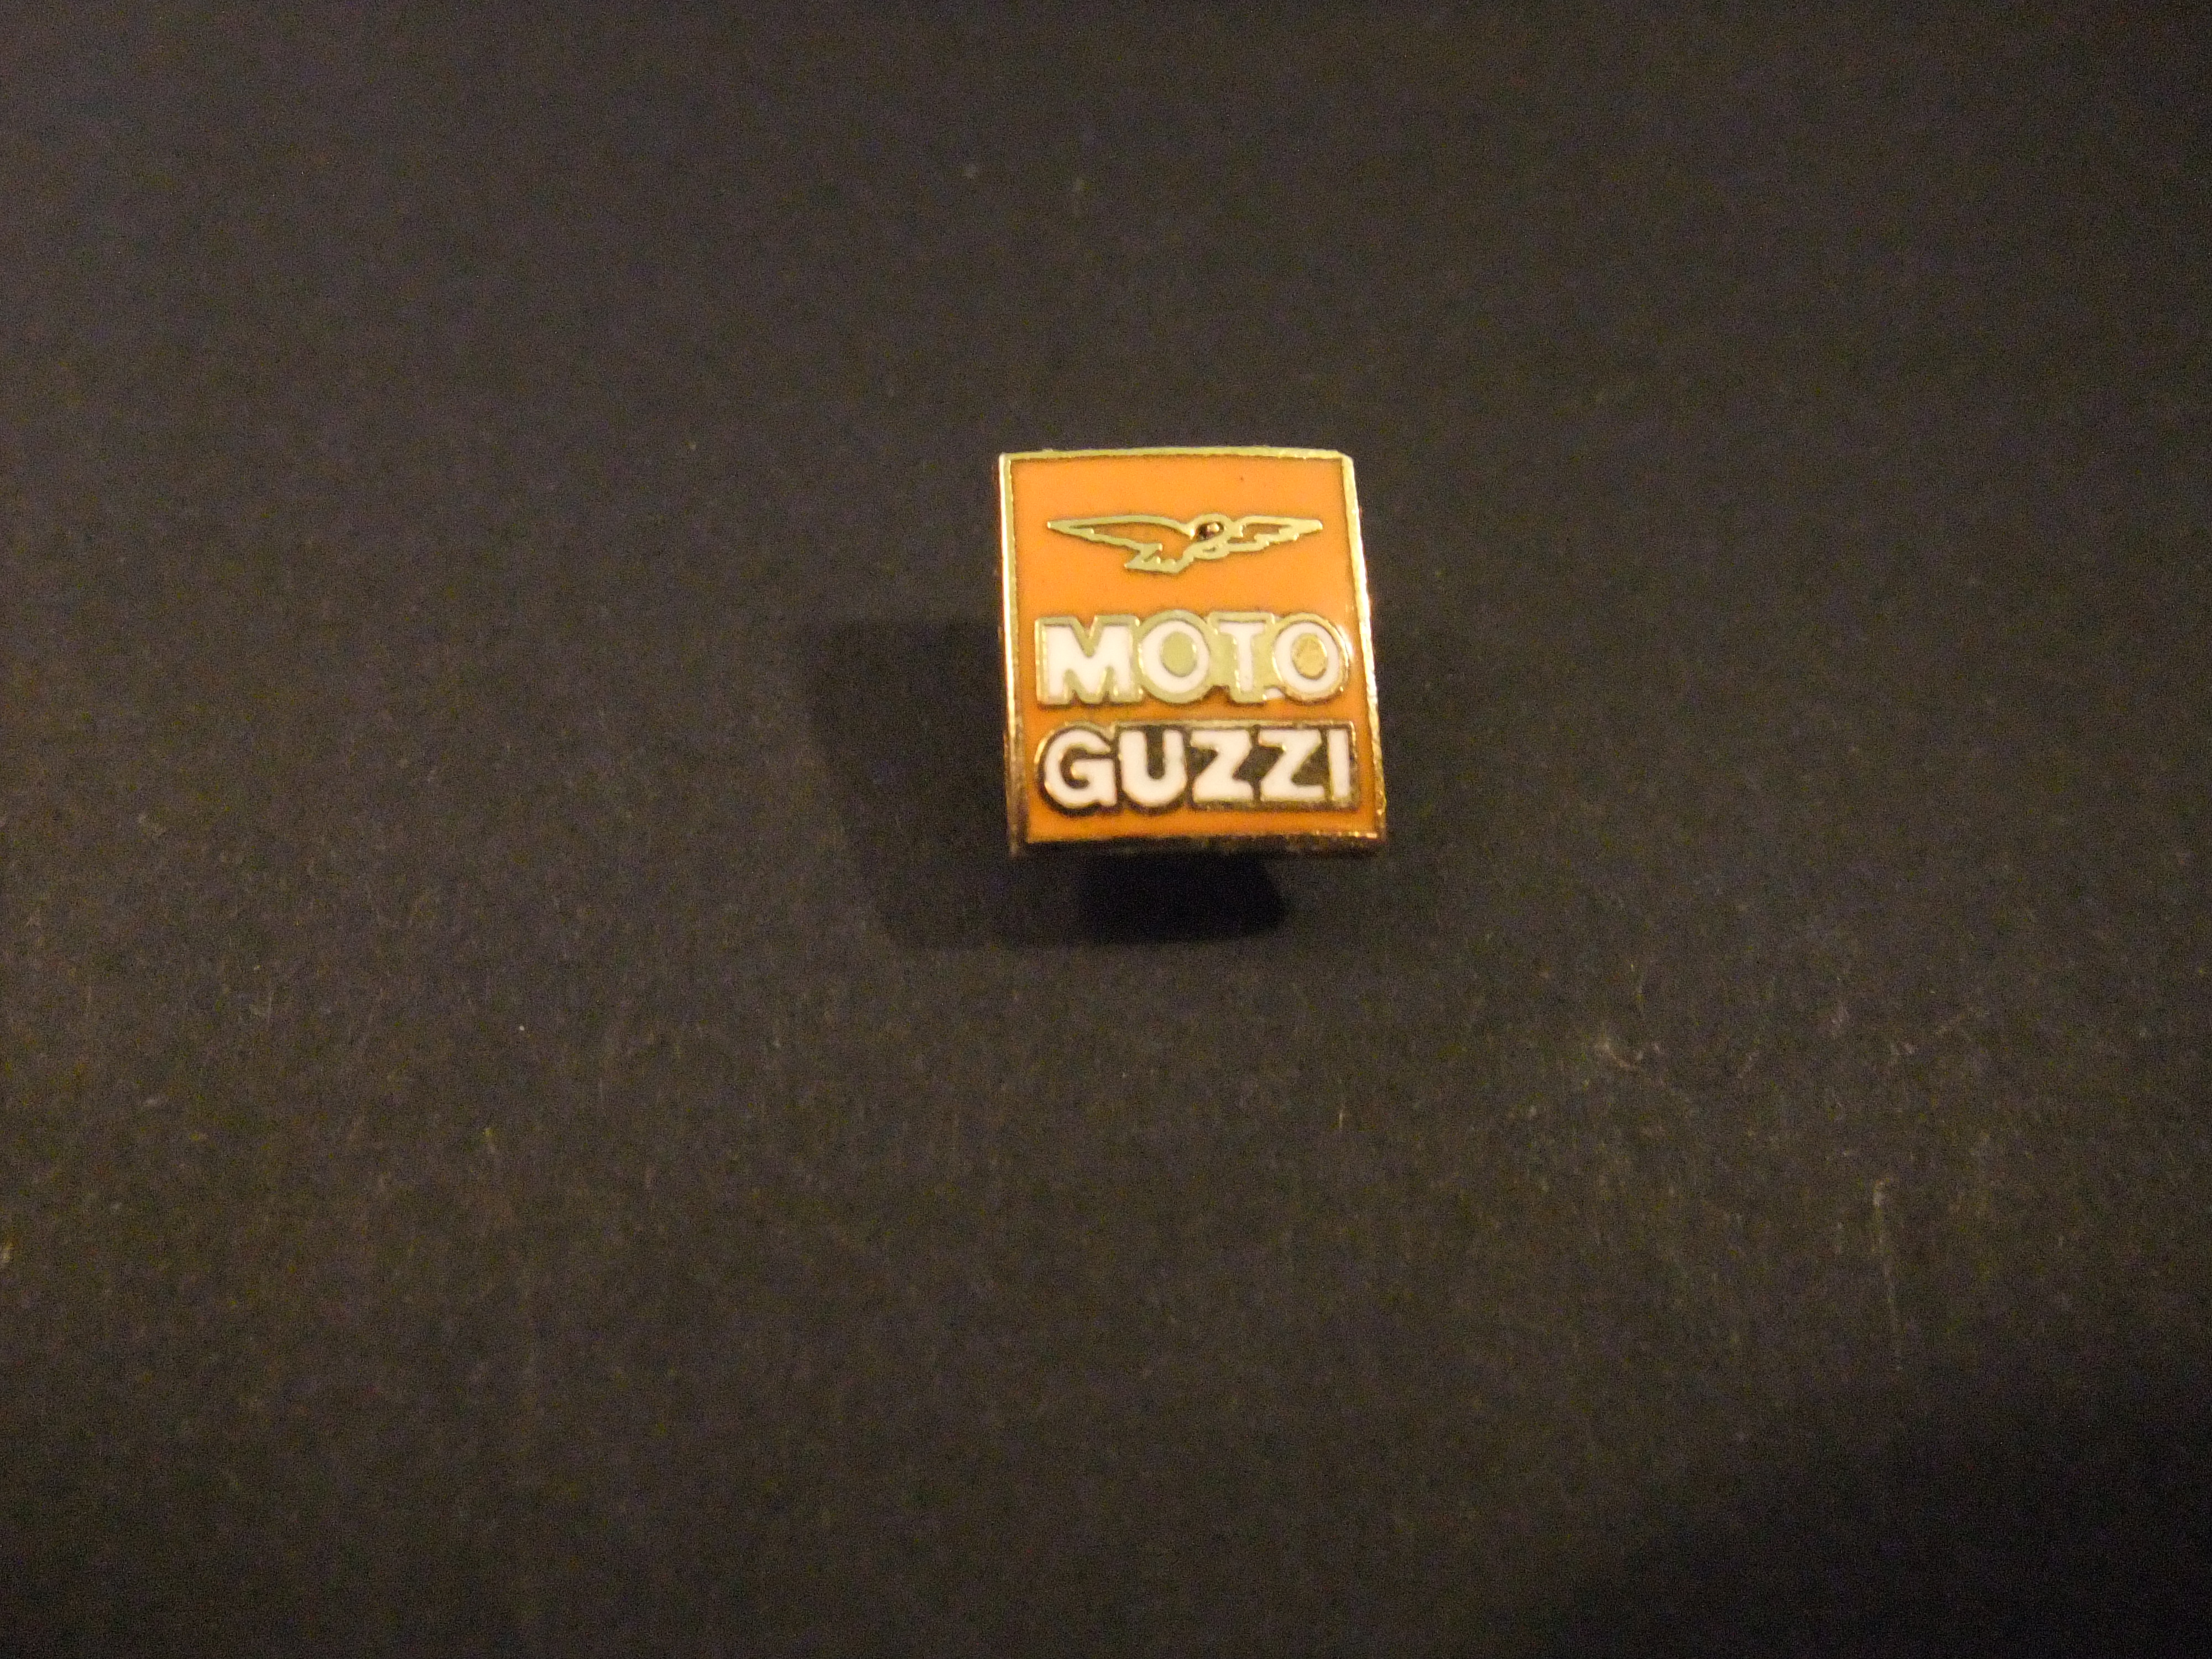 Moto Guzzi Italiaanse fabrikant van motorfietsen, logo, oranje